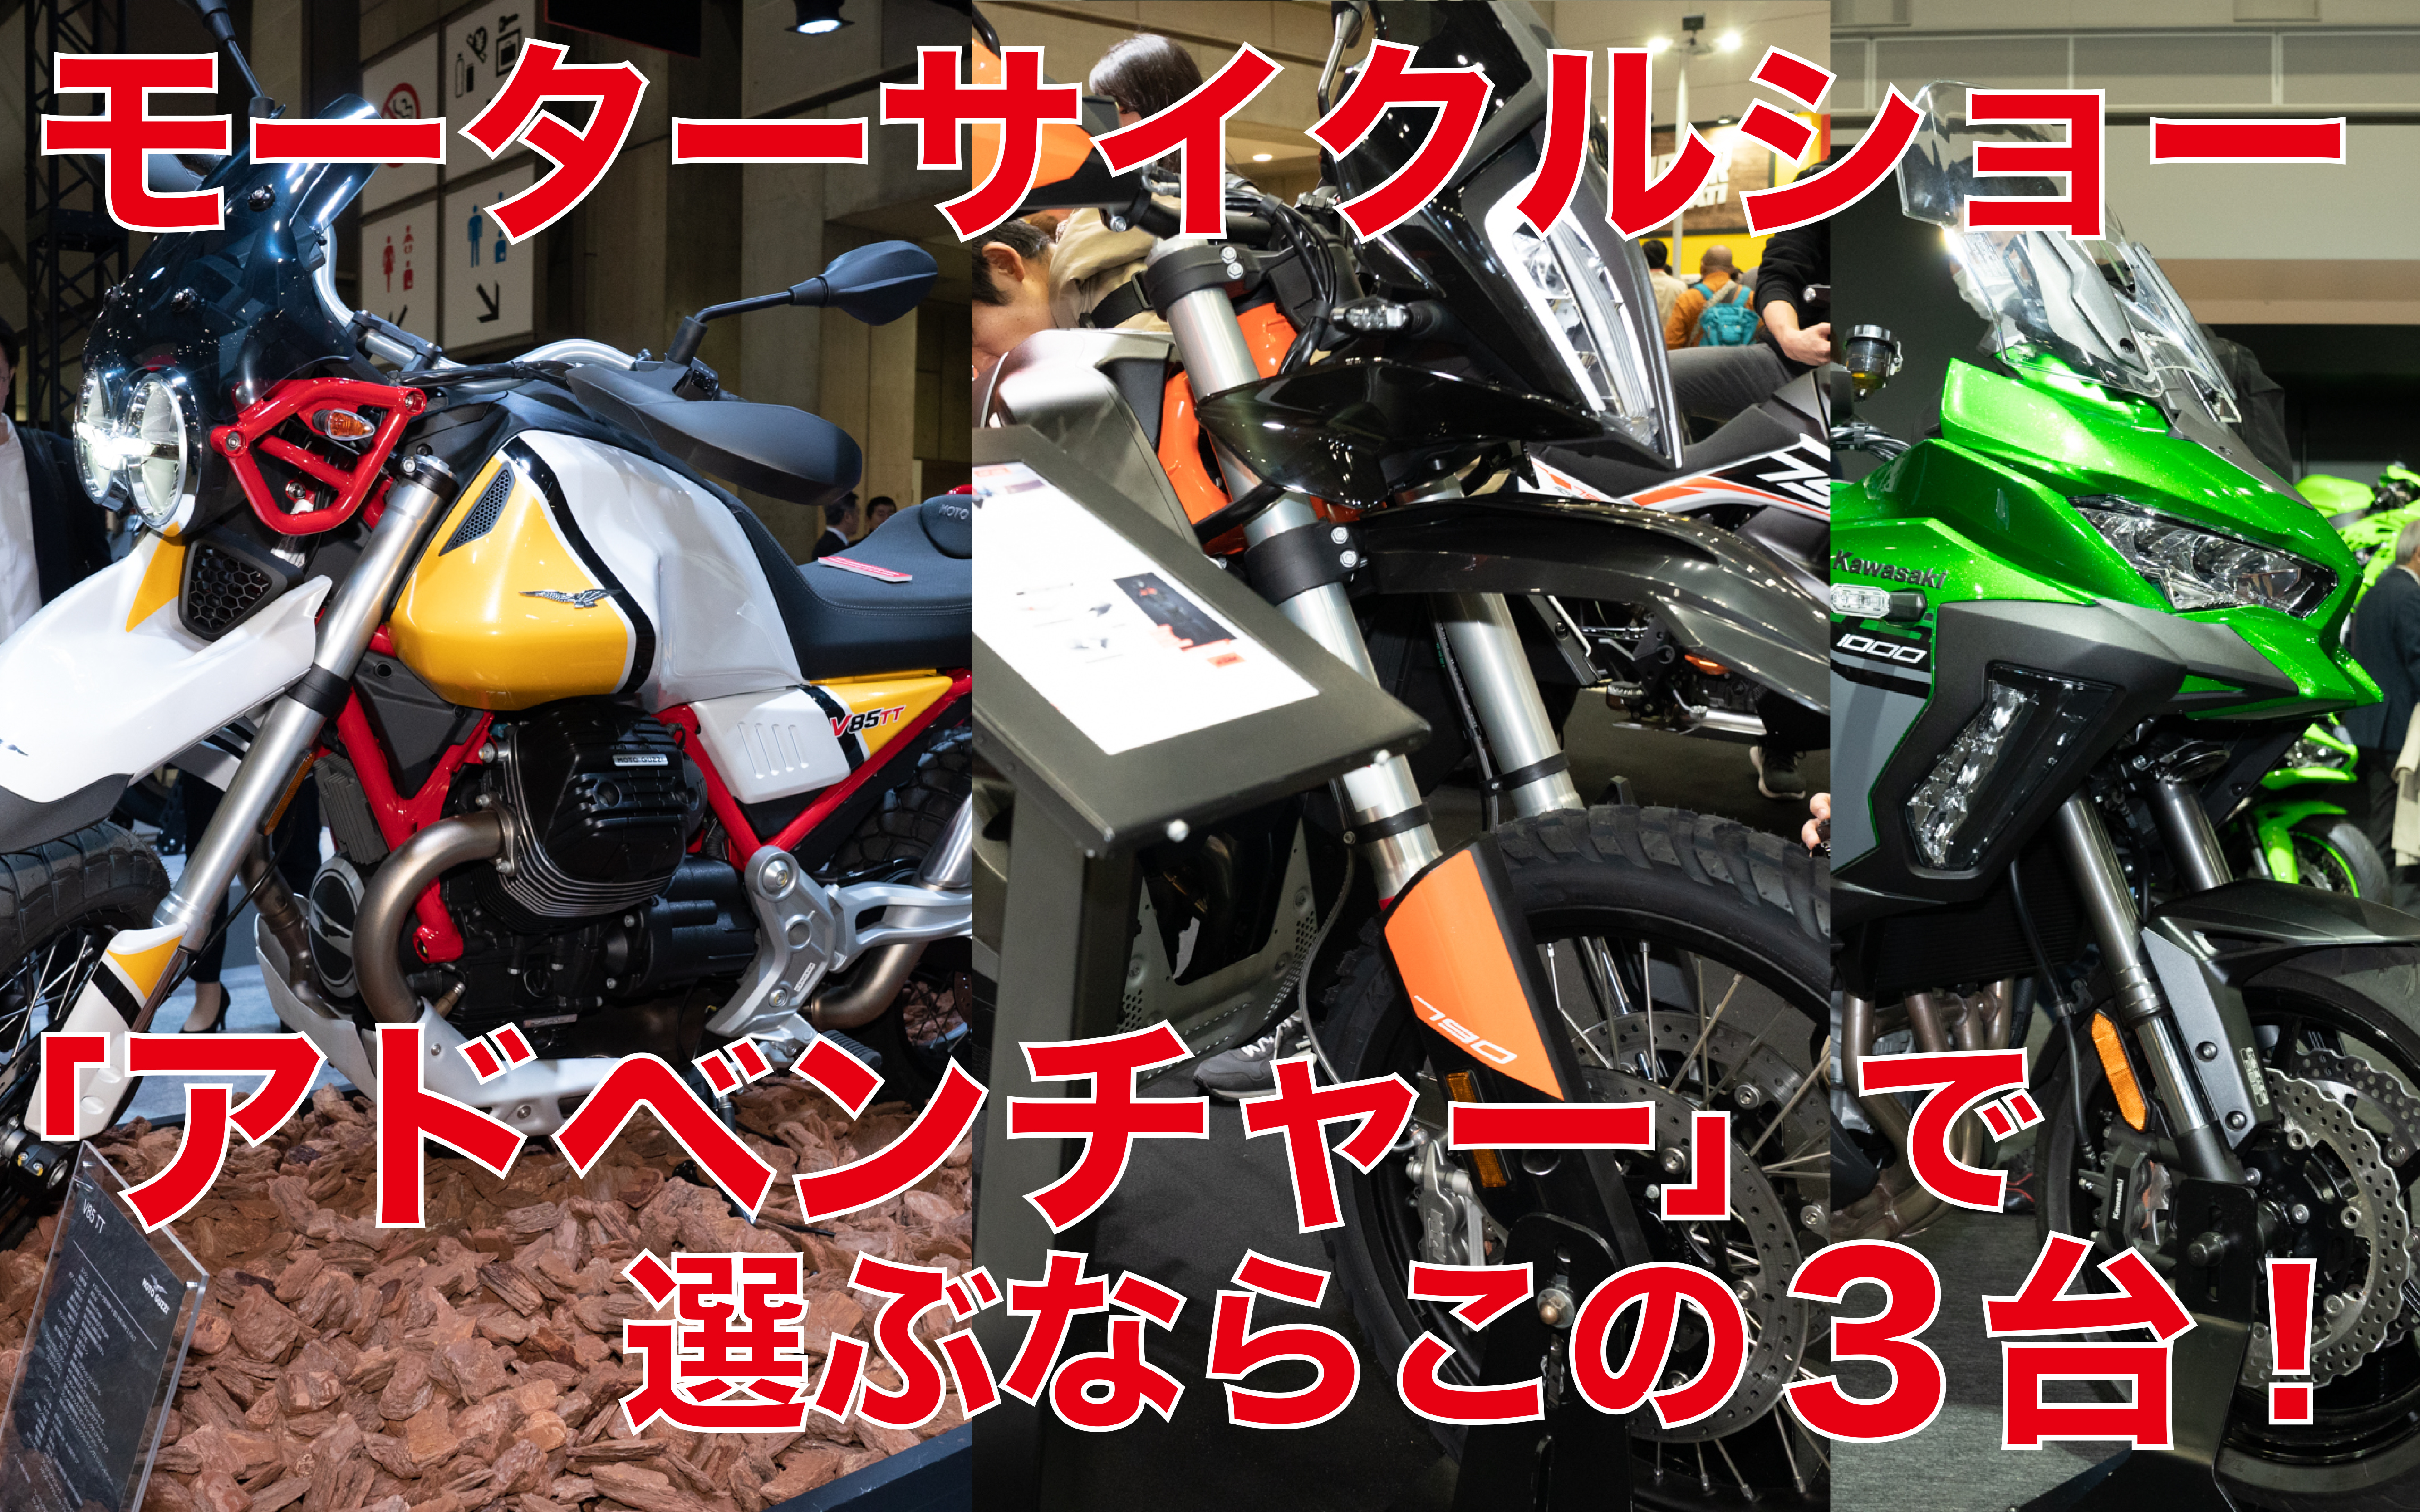 アドベンチャー編 モーターサイクルショー出展バイクから独断チョイス ならこの3台 Clicccar Com